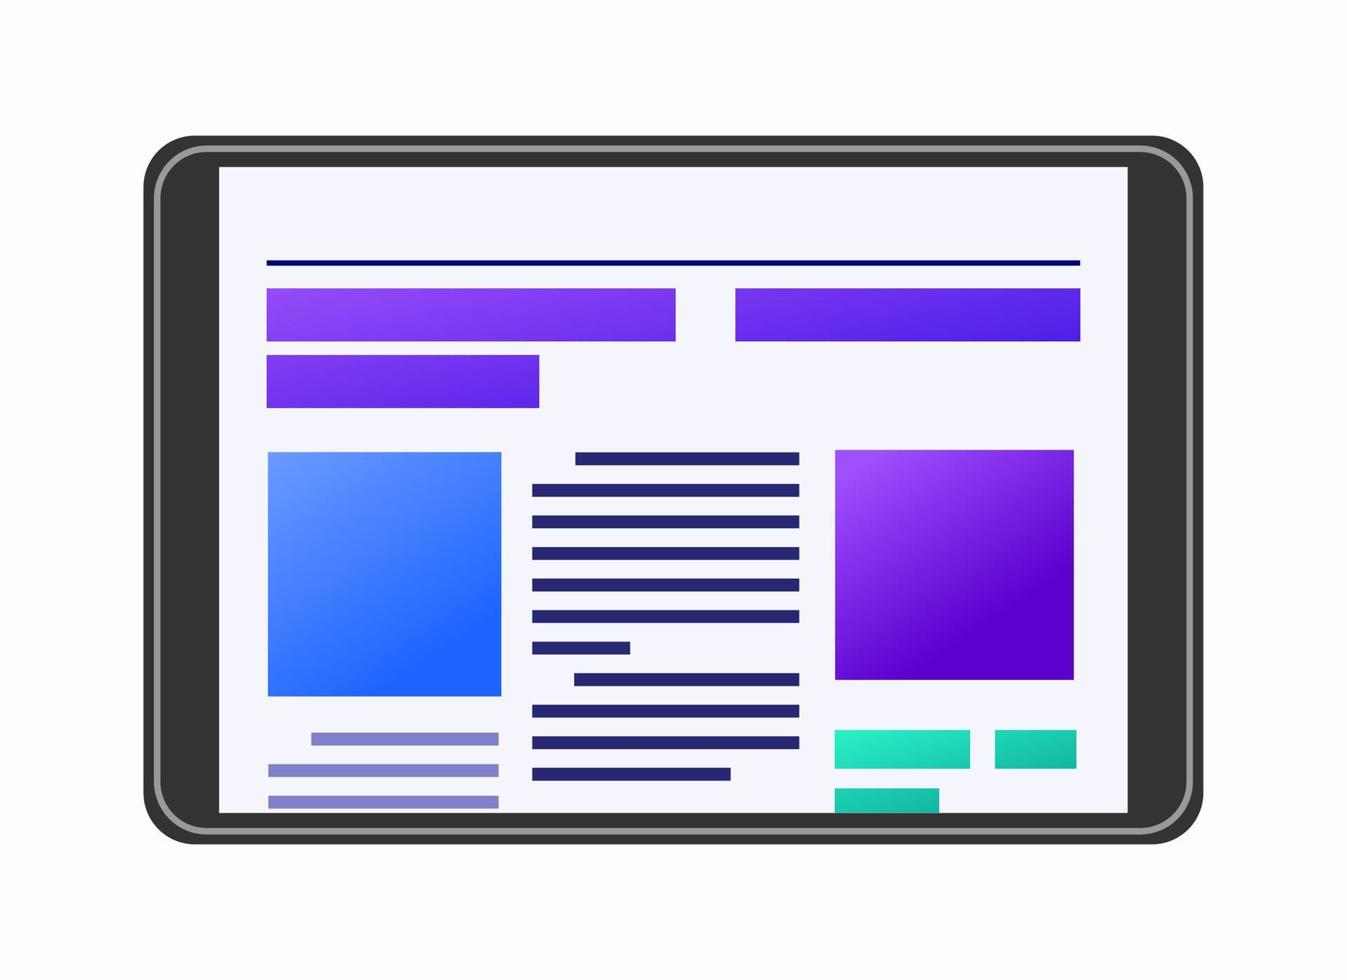 krant op digitale tablet pictogram vectorillustratie voor bedrijfsrapport en presentatie over het lezen van digitale media informatie kop nieuws vector